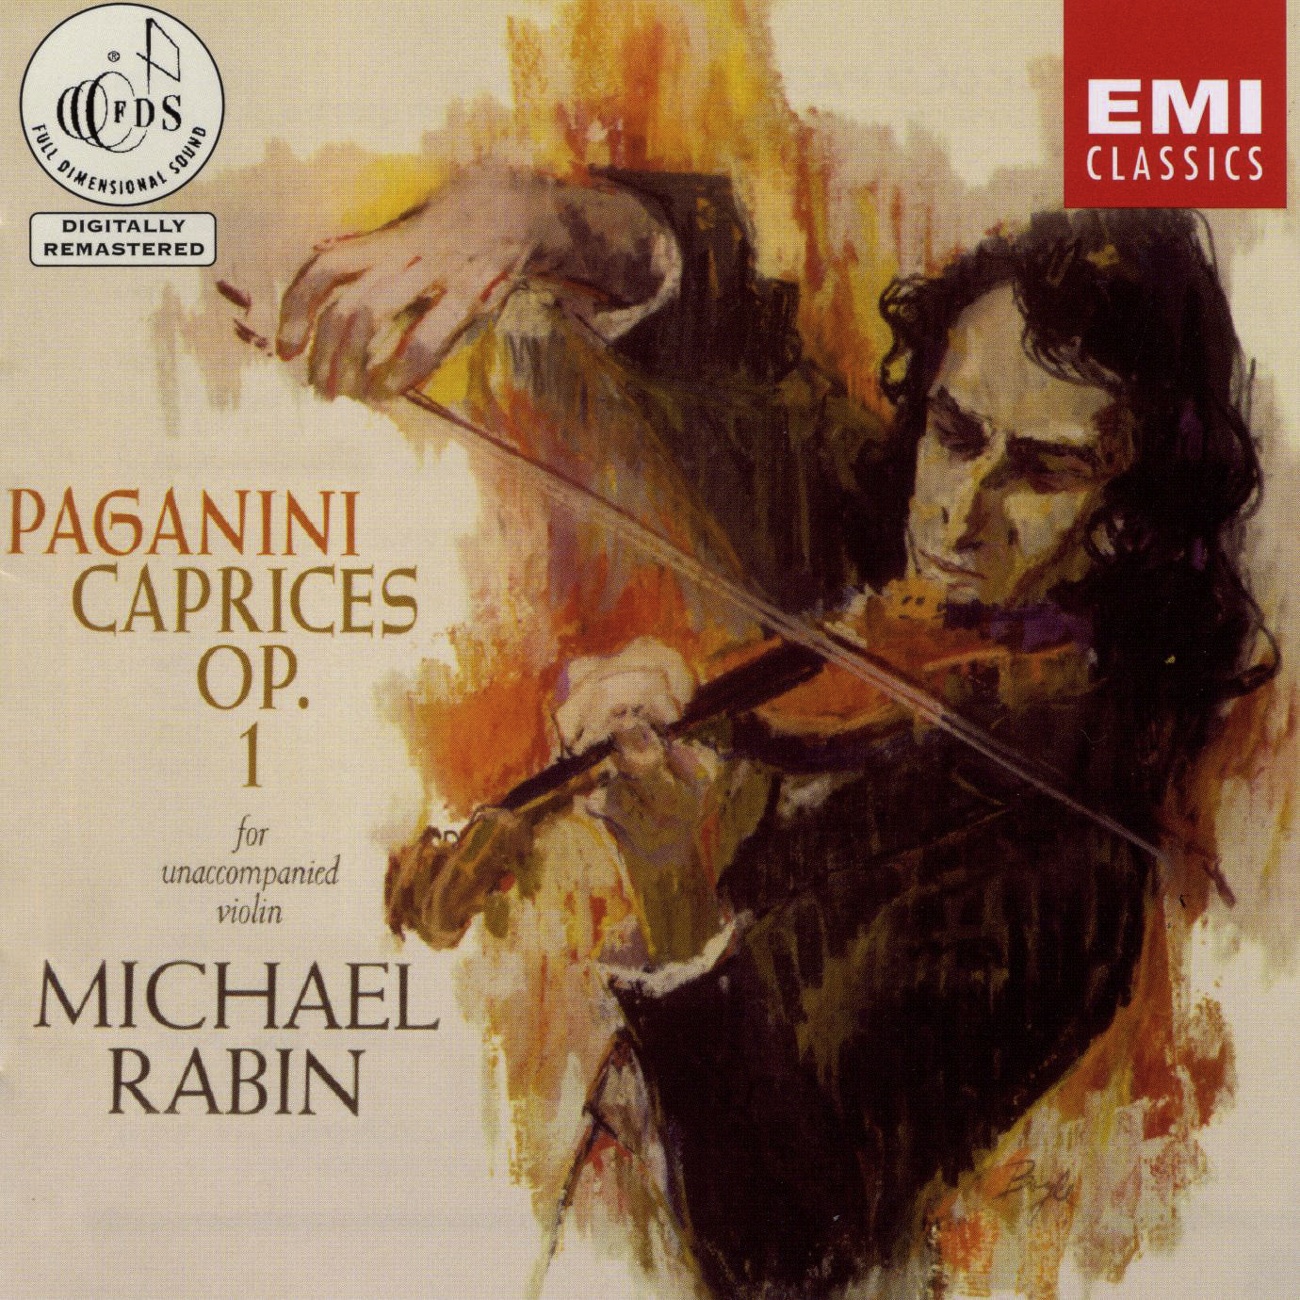 Paganini: 24 Caprices for Solo Violin, Op. 1 (2000 Digital Remaster): No. 4 in C minor - Maestoso